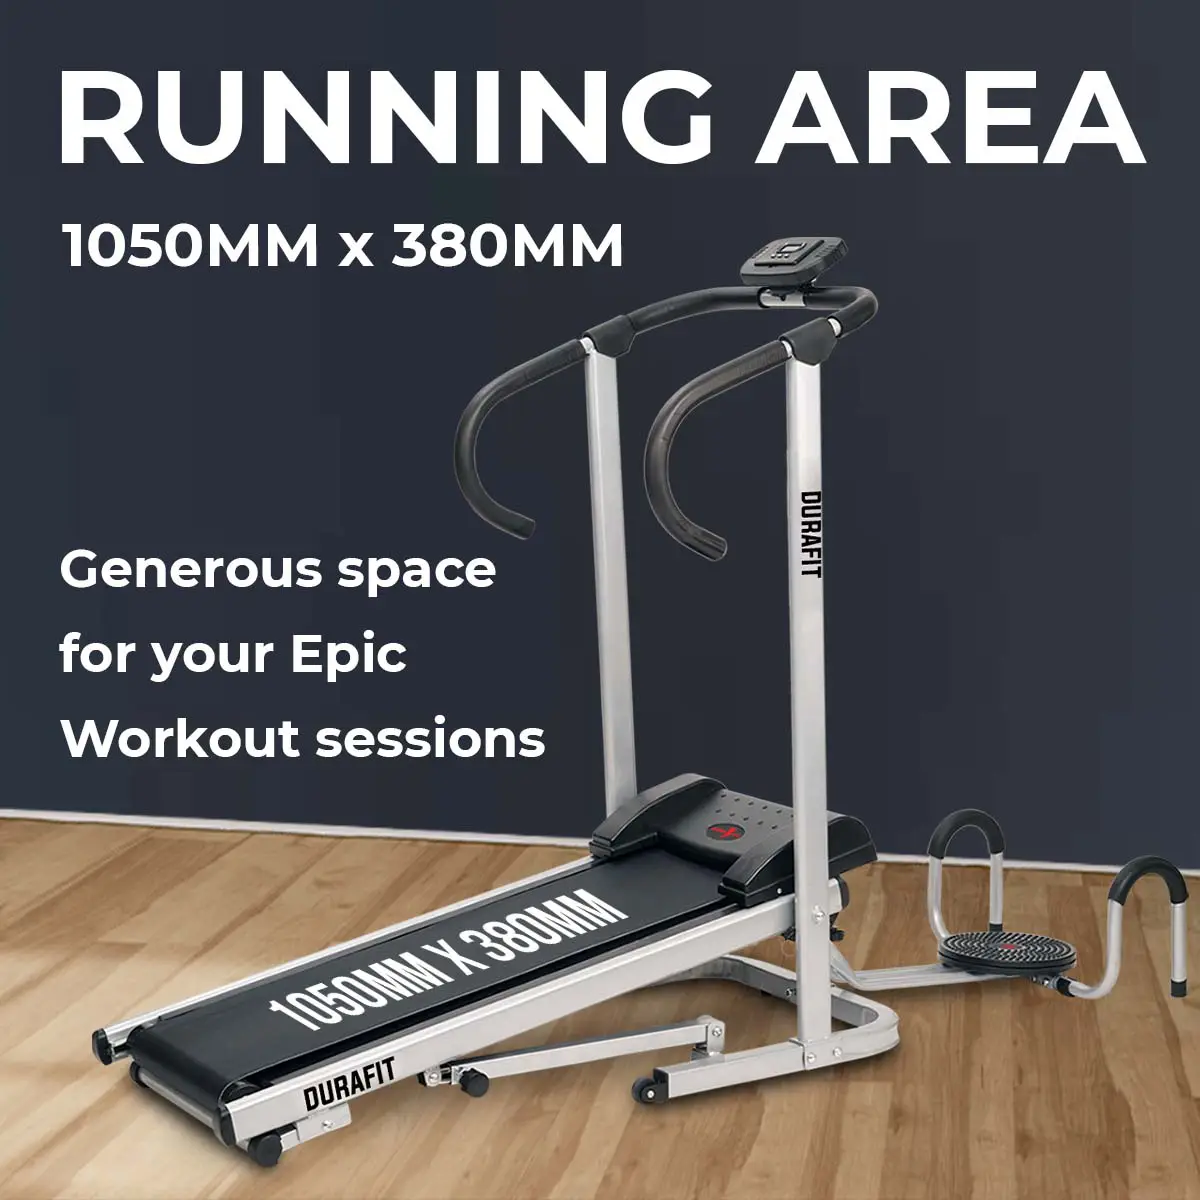 Durafit Manual Treadmill Hmtt1 with larger running area